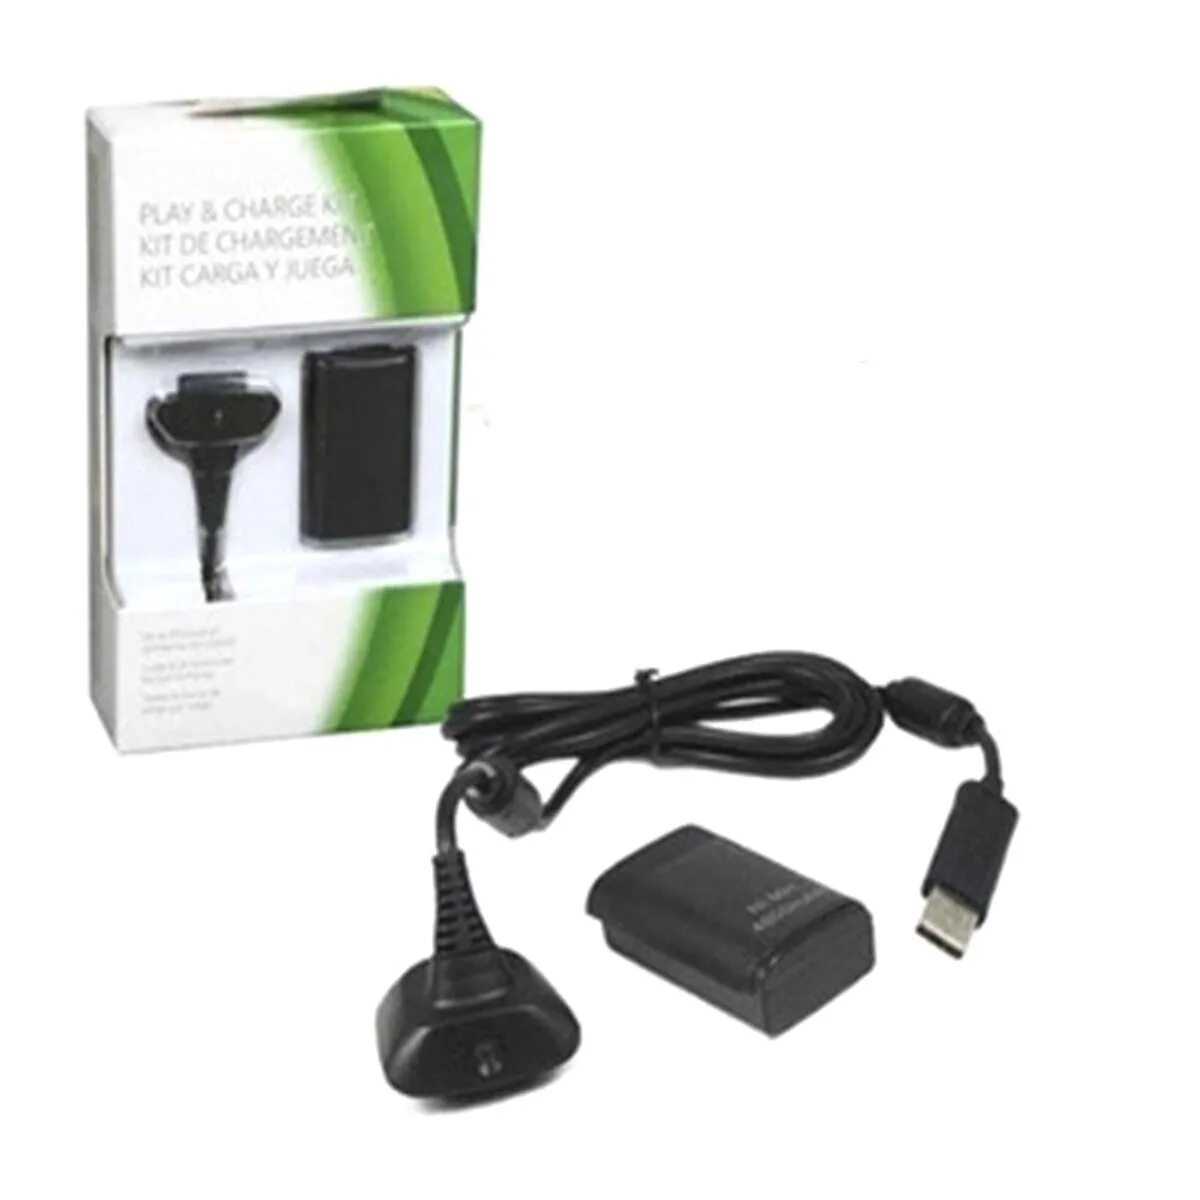 Xbox 360 play. Charge Kit Xbox 360. Геймпад Xbox 360 зарядка. Play charge Kit Xbox 360. Зарядка для джойстика Xbox 360 от сети.